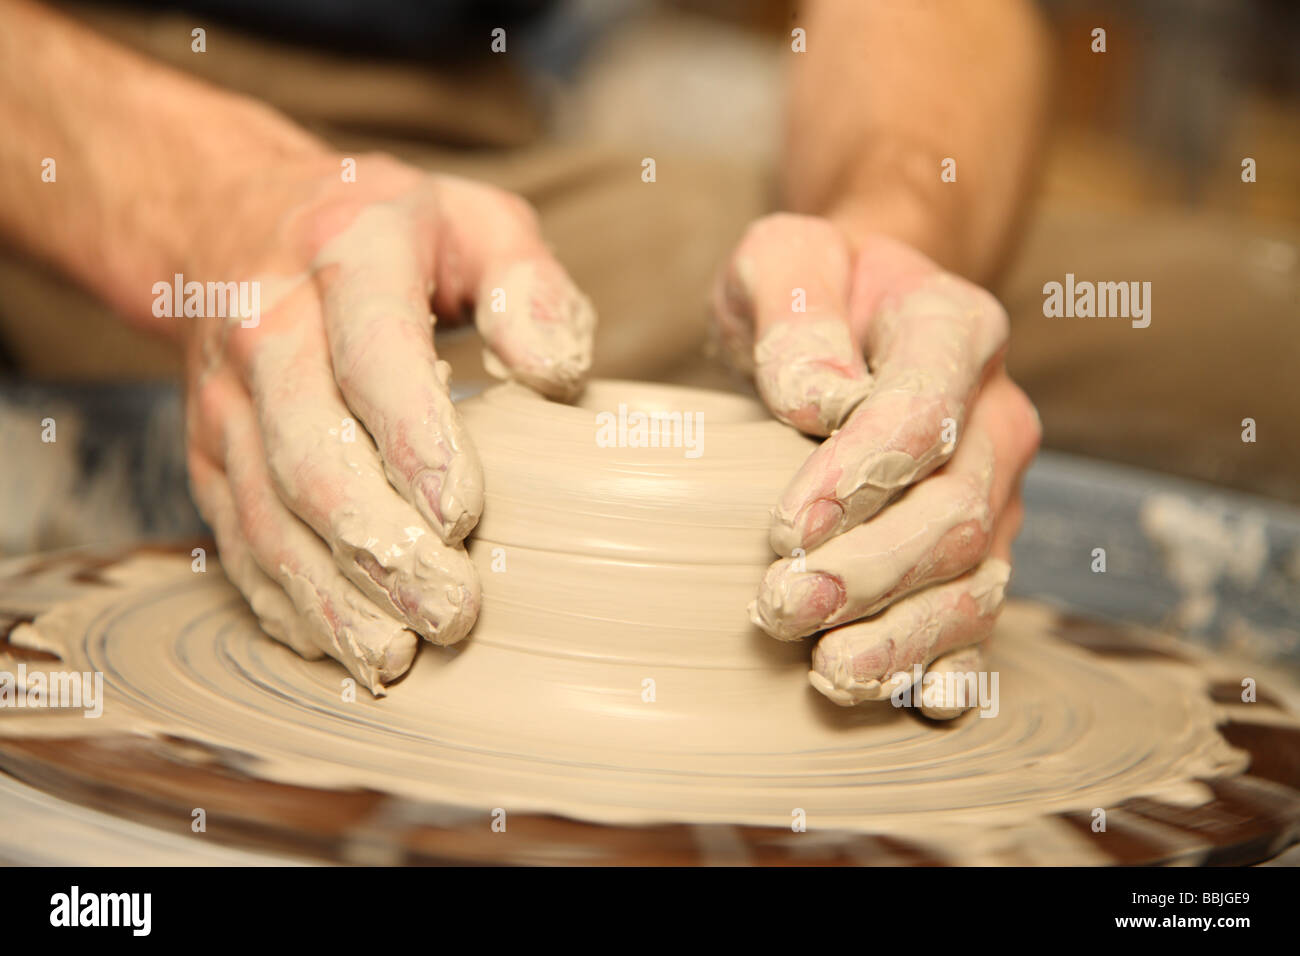 Primer plano de manos trabajando en rueda de alfarería Foto de stock